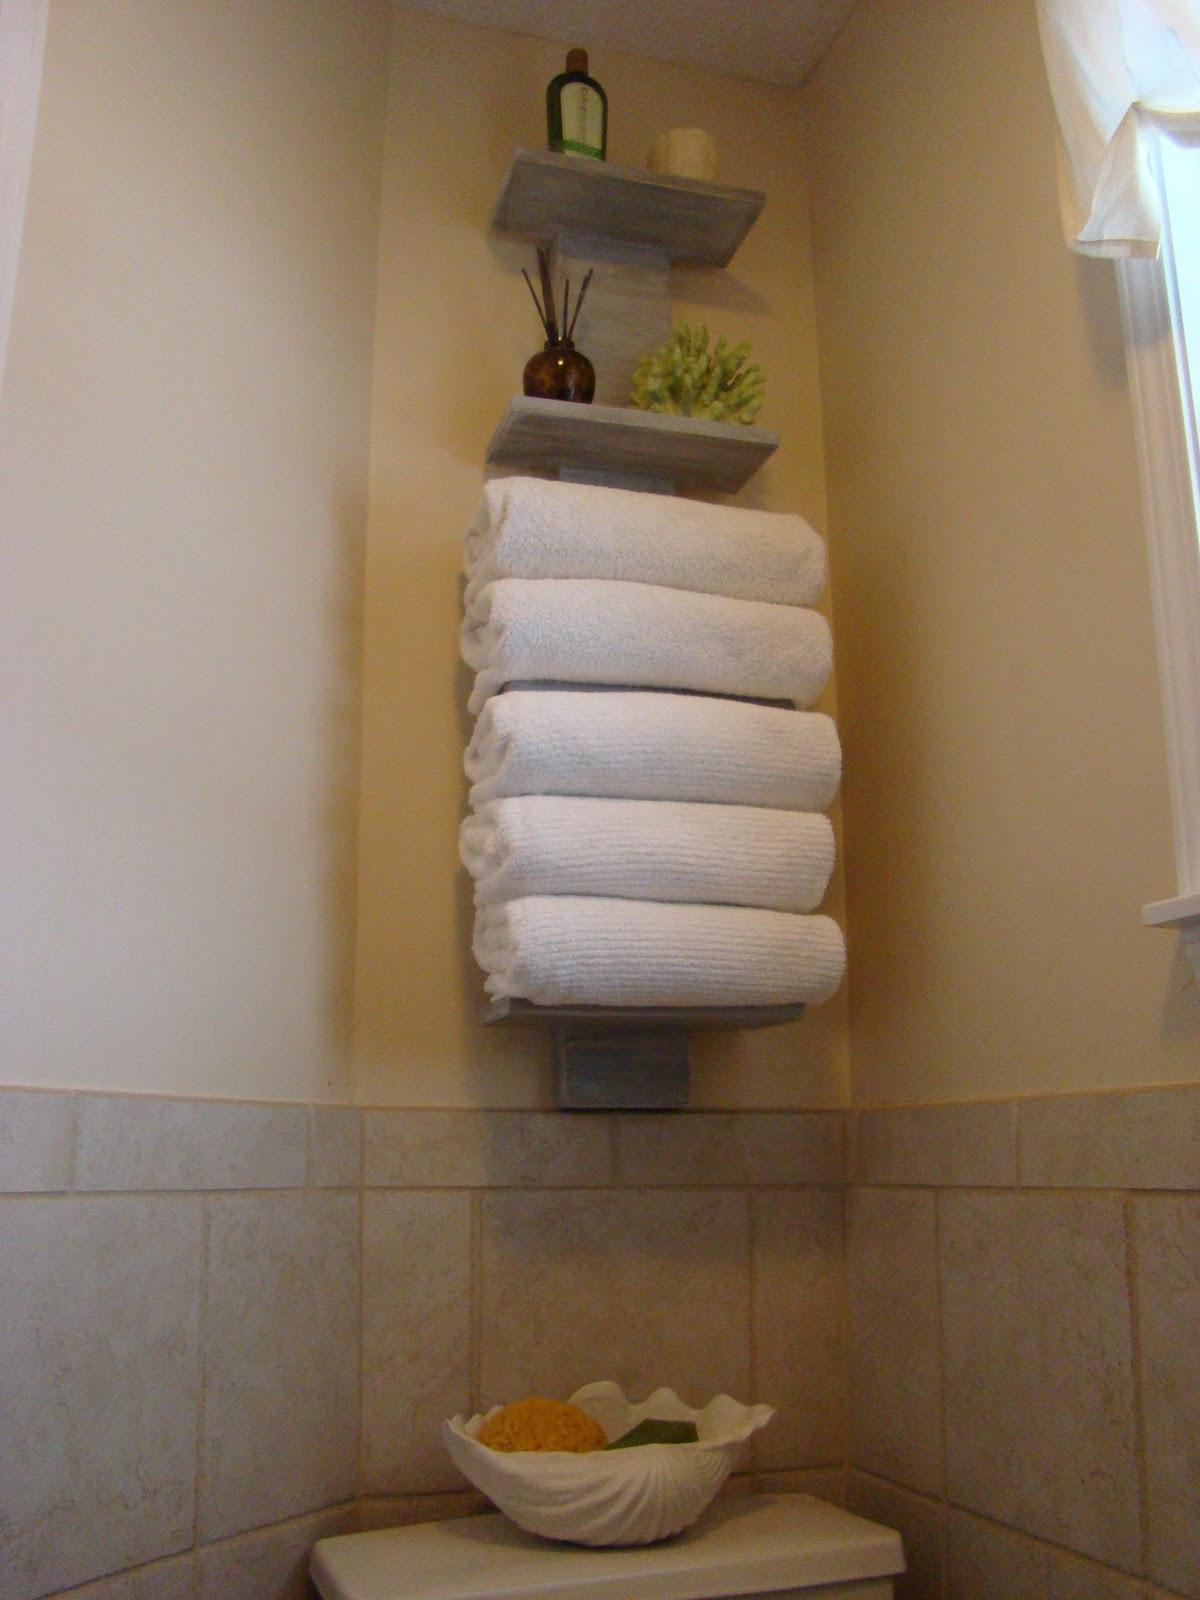 Towel Storage For Bathroom
 My bath FINALLY s some towel storage